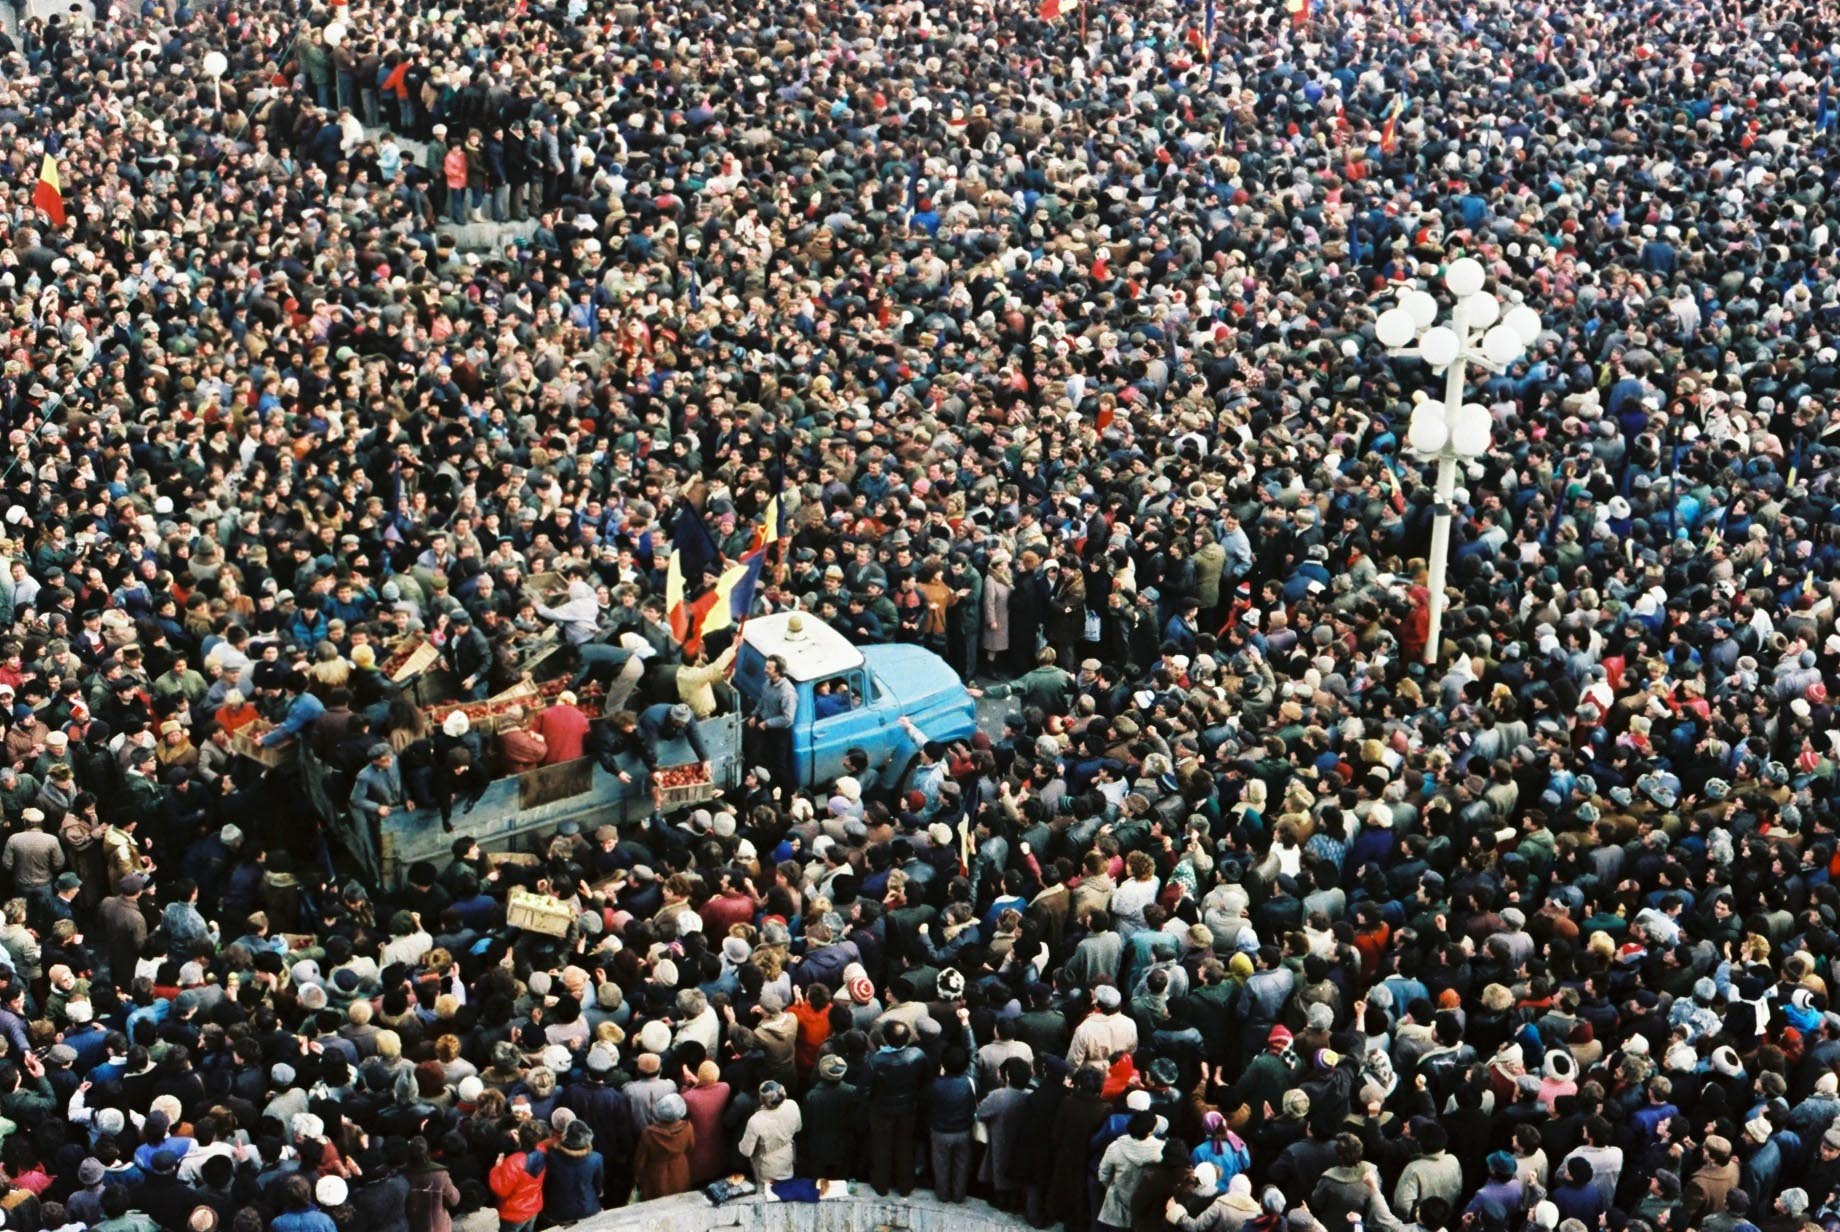 21 DECEMBRIE 1989, TIMIȘOARA. PROCLAMAȚIA FRONTULUI DEMOCRATIC ROMÂN și MANIFESTUL „A CĂZUT TIRANIA!” – Cerul, Codrul și Pârăul